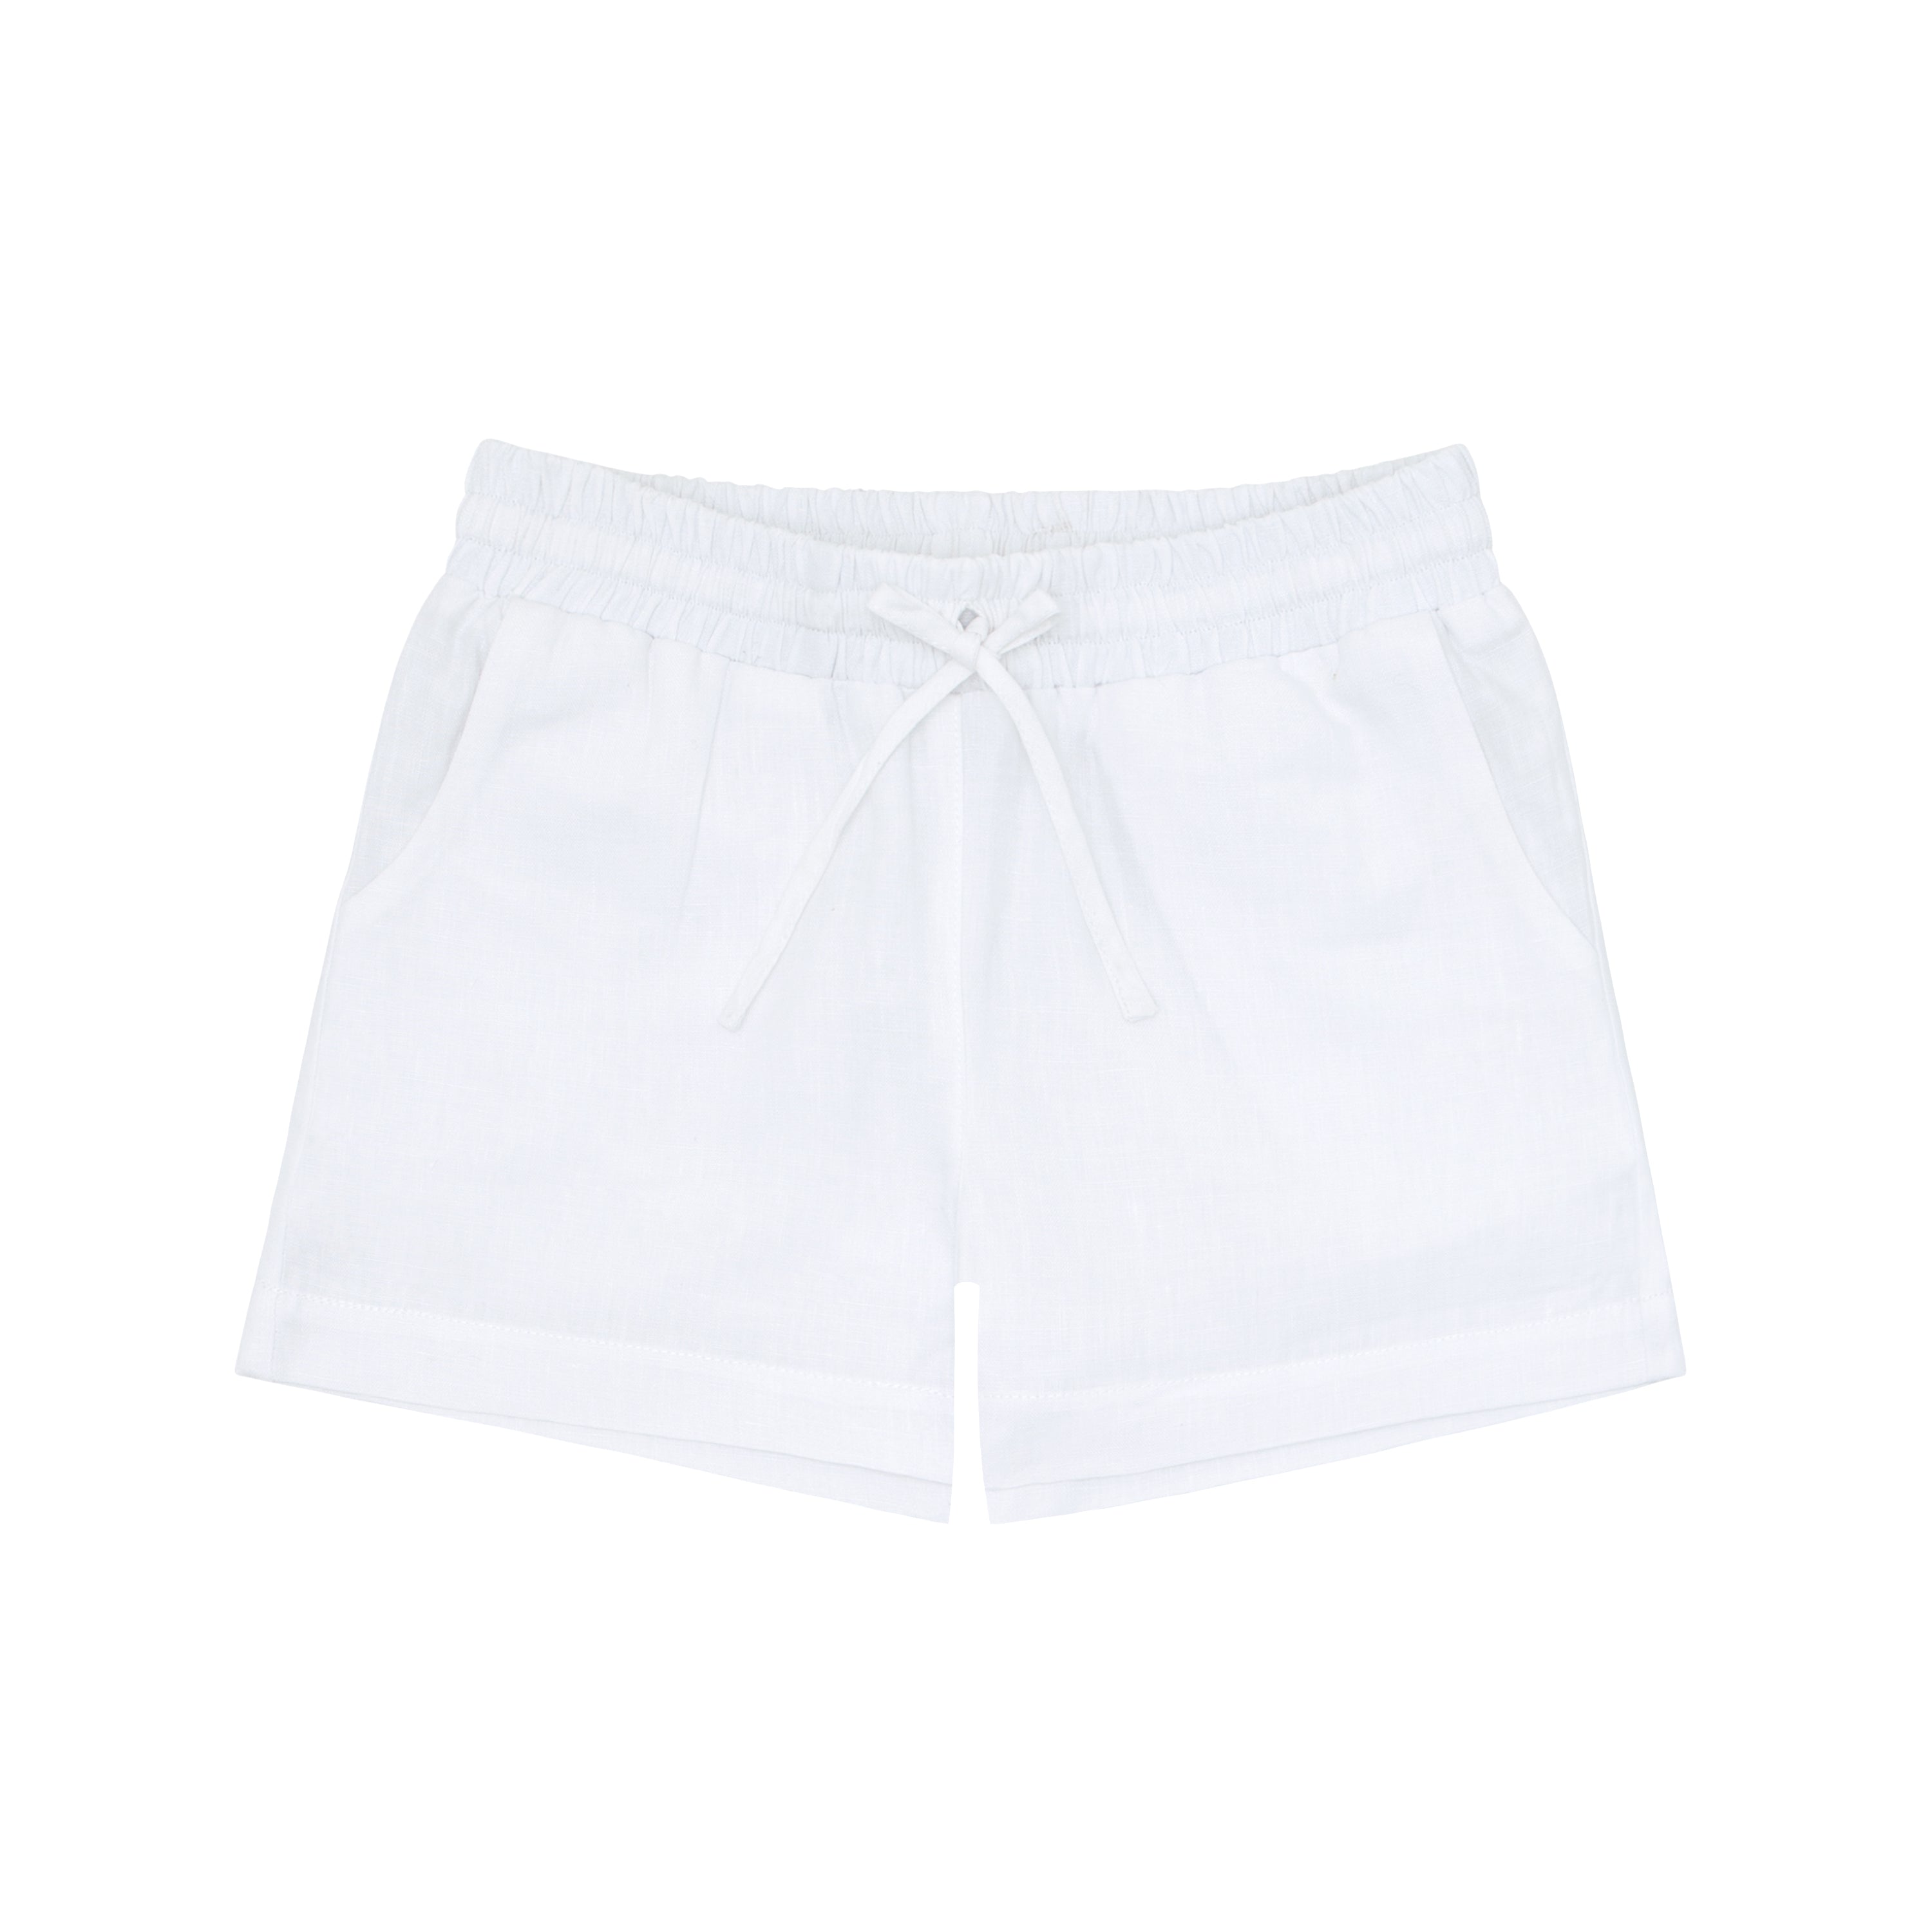 Fanm Mon x Minnow Boy's Linen Shorts (Pre-Order) by Fanm Mon